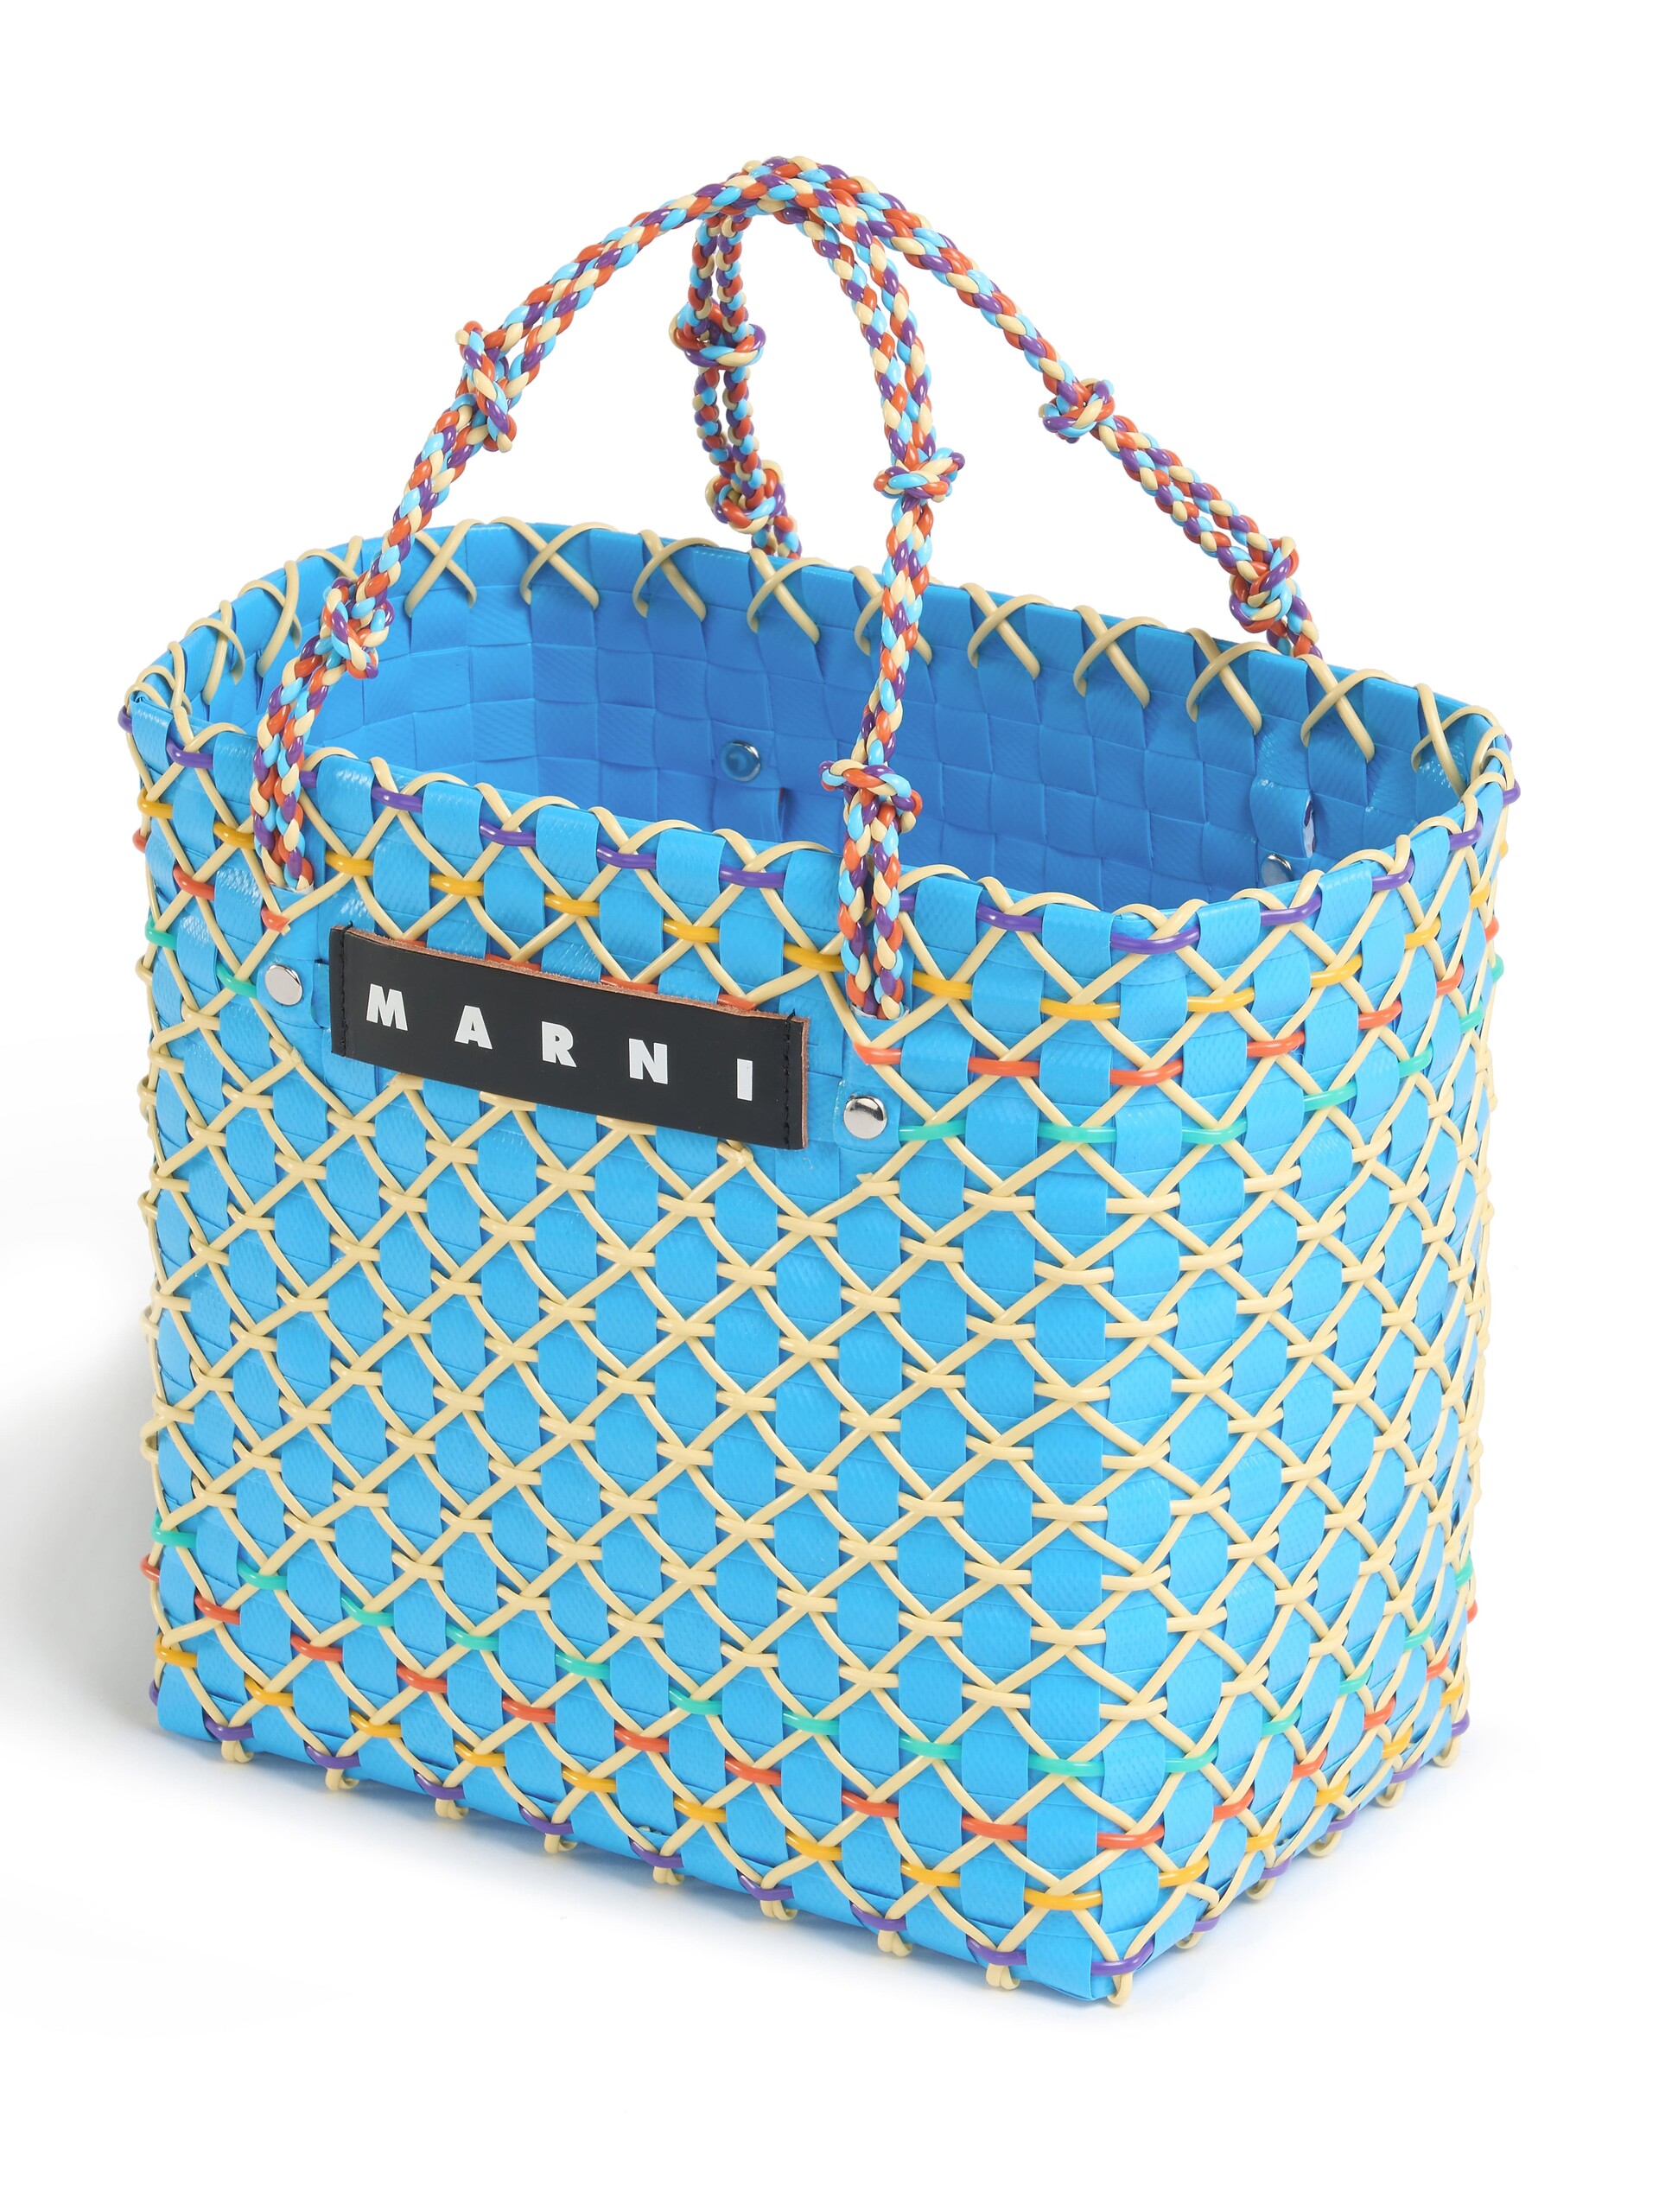 Borsa MARNI MARKET CAKE BASKET in intrecciato azzurro - Borse shopping - Image 4